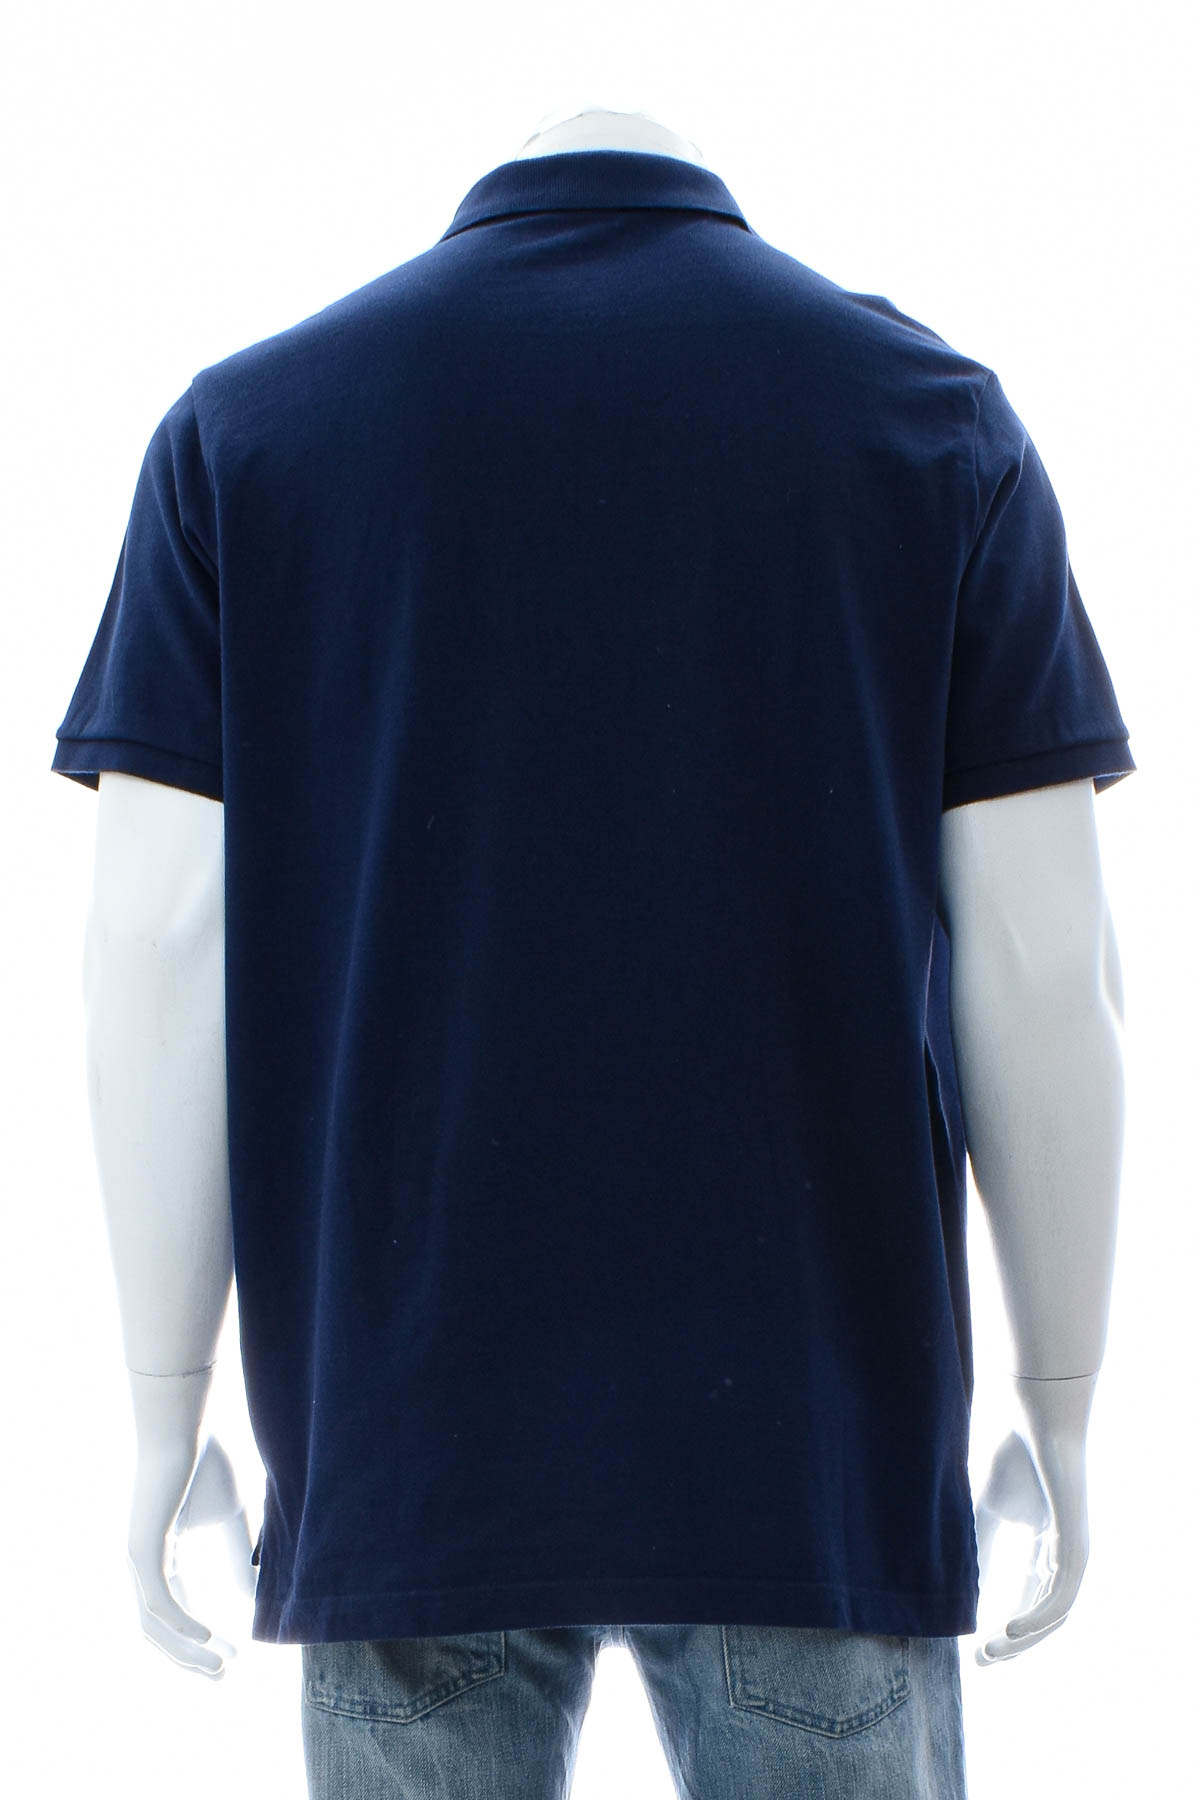 Αντρική μπλούζα - U.S. Polo ASSN. - 1